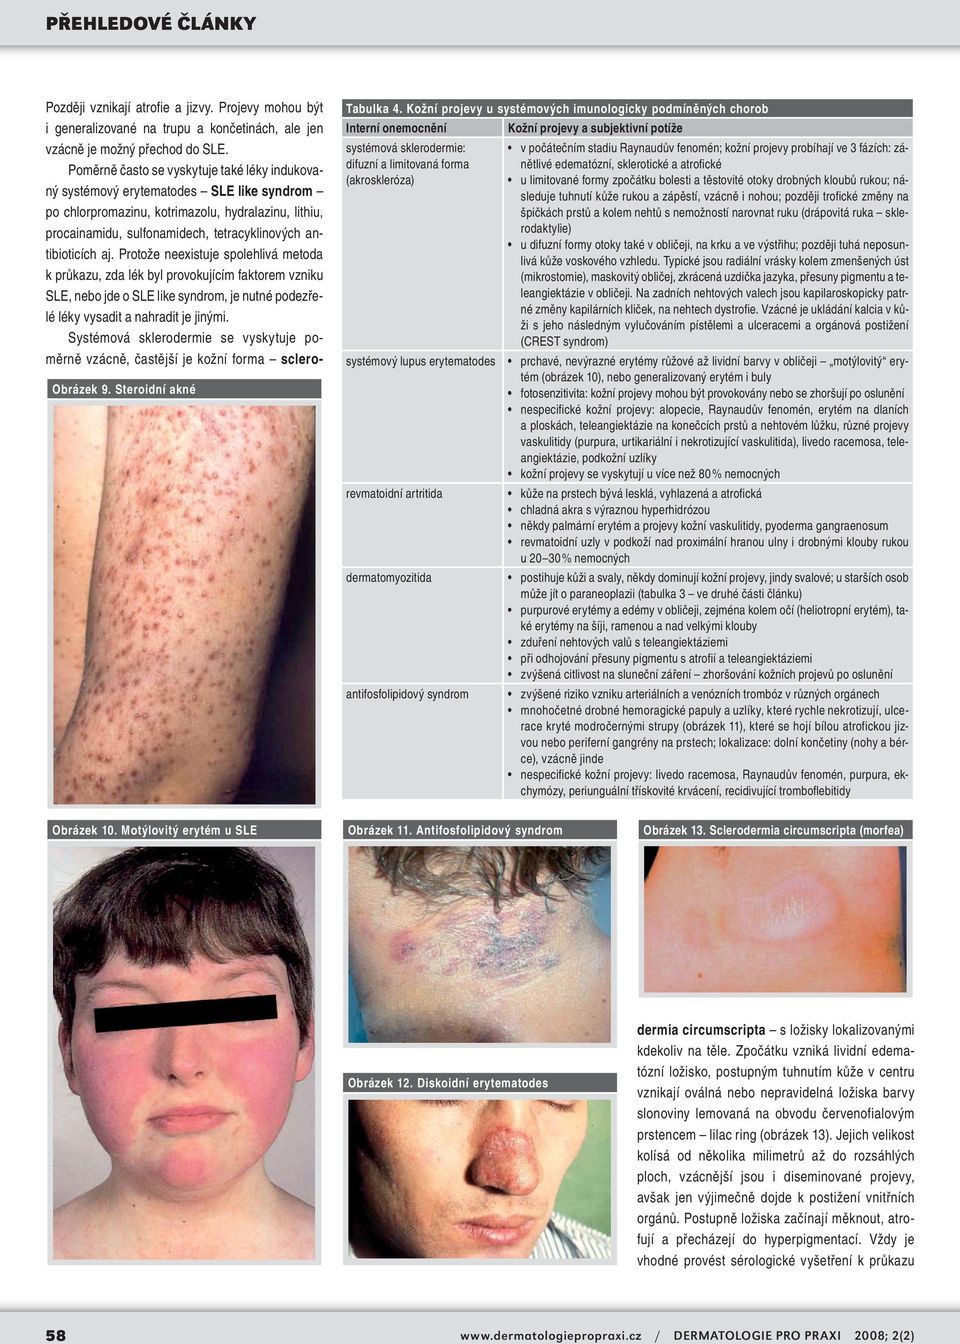 revmatoidní artritida dermatomyozitida antifosfolipidový syndrom v počátečním stadiu Raynaudův fenomén; kožní projevy probíhají ve 3 fázích: zánětlivé edematózní, sklerotické a atrofické u limitované